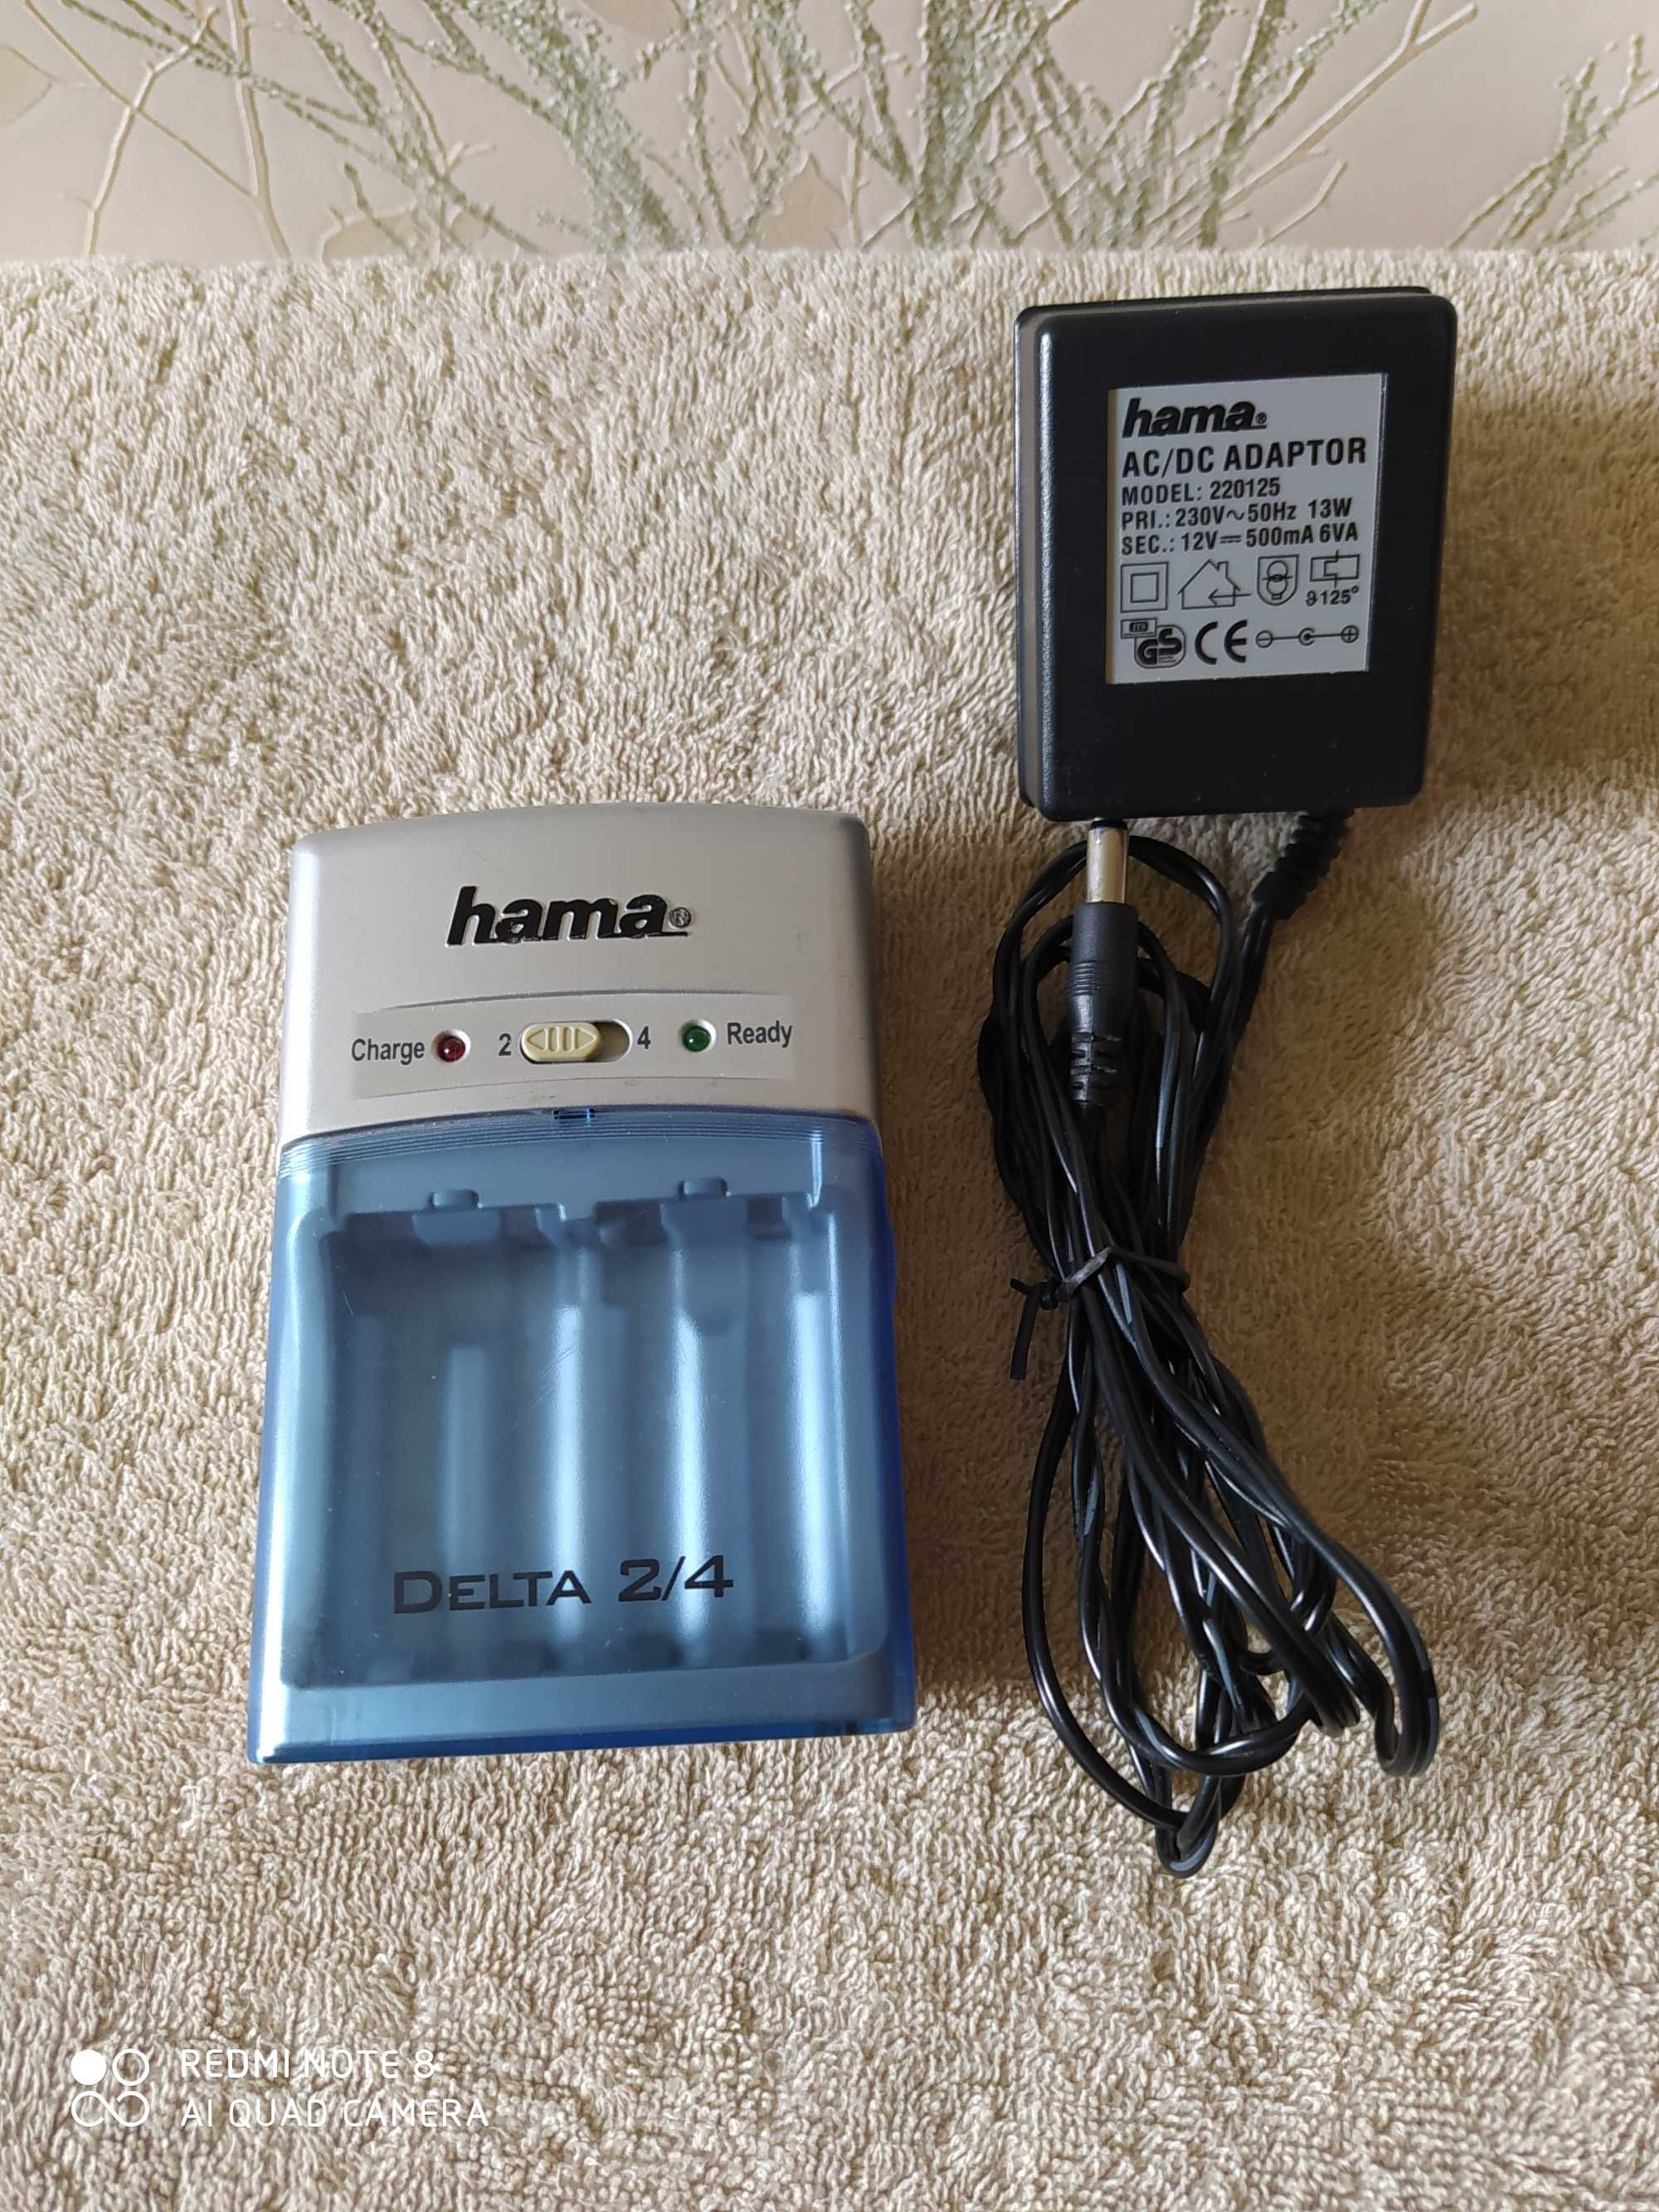 Зарядное устройство hama Delta 2/4 для аккумуляторов АА и ААА.